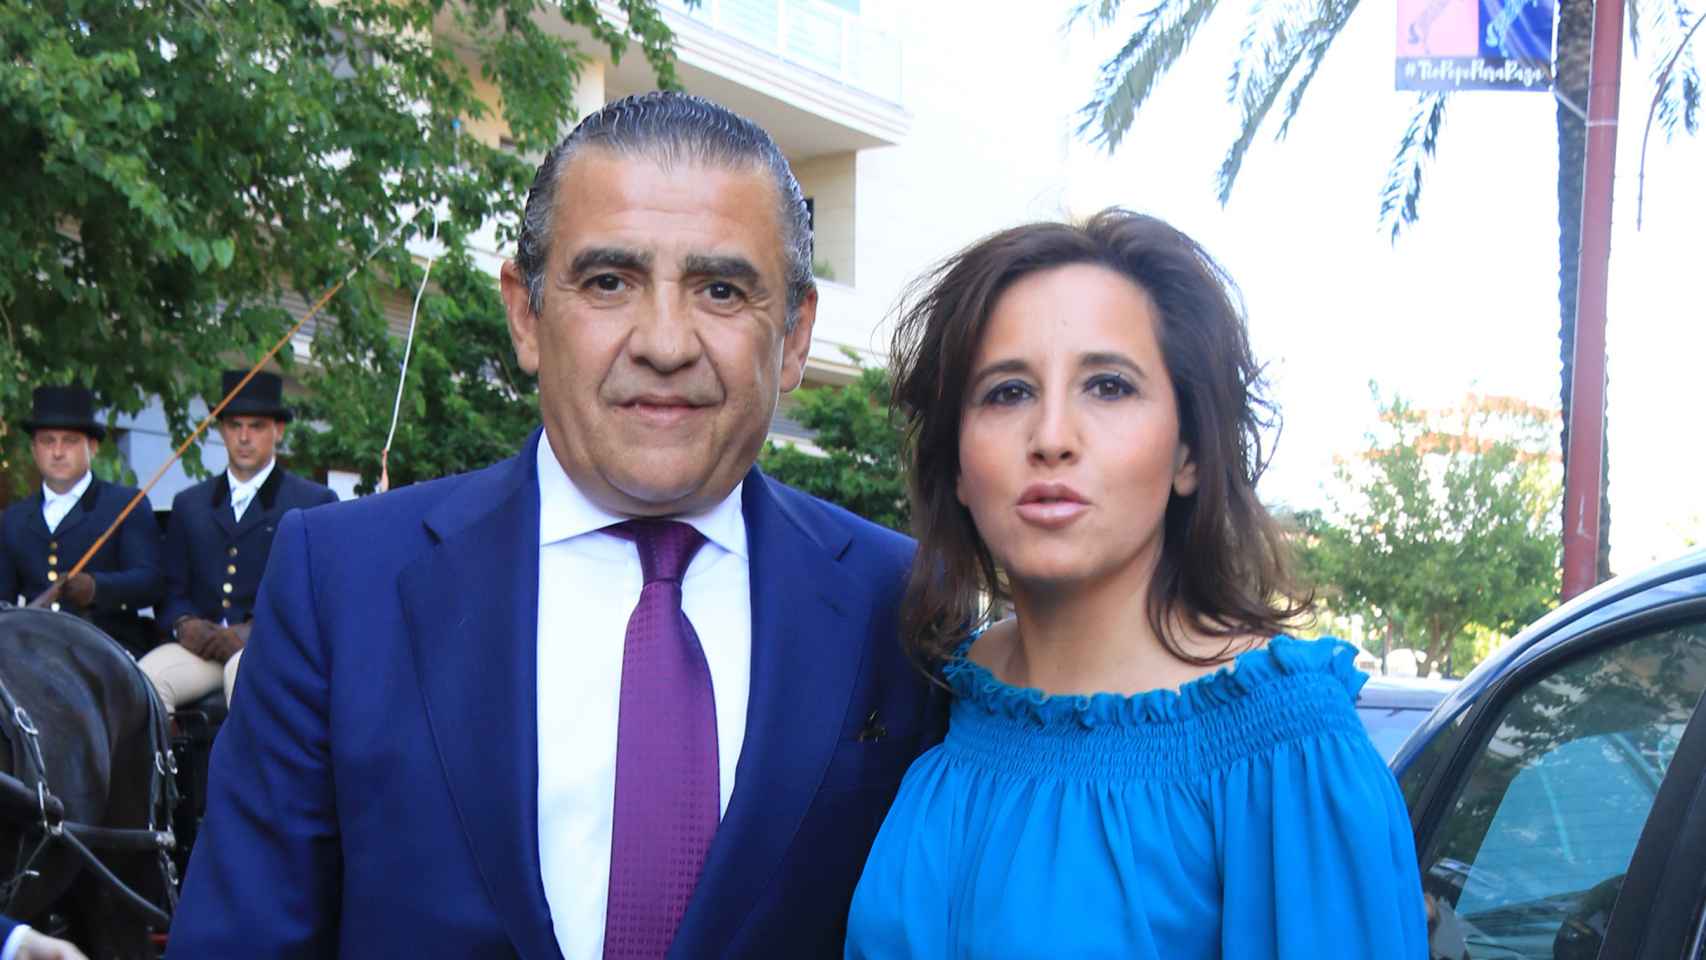 Jaime Martínez-Bordiú y su pareja Marta Fernández en una imagen tomada en 2018.